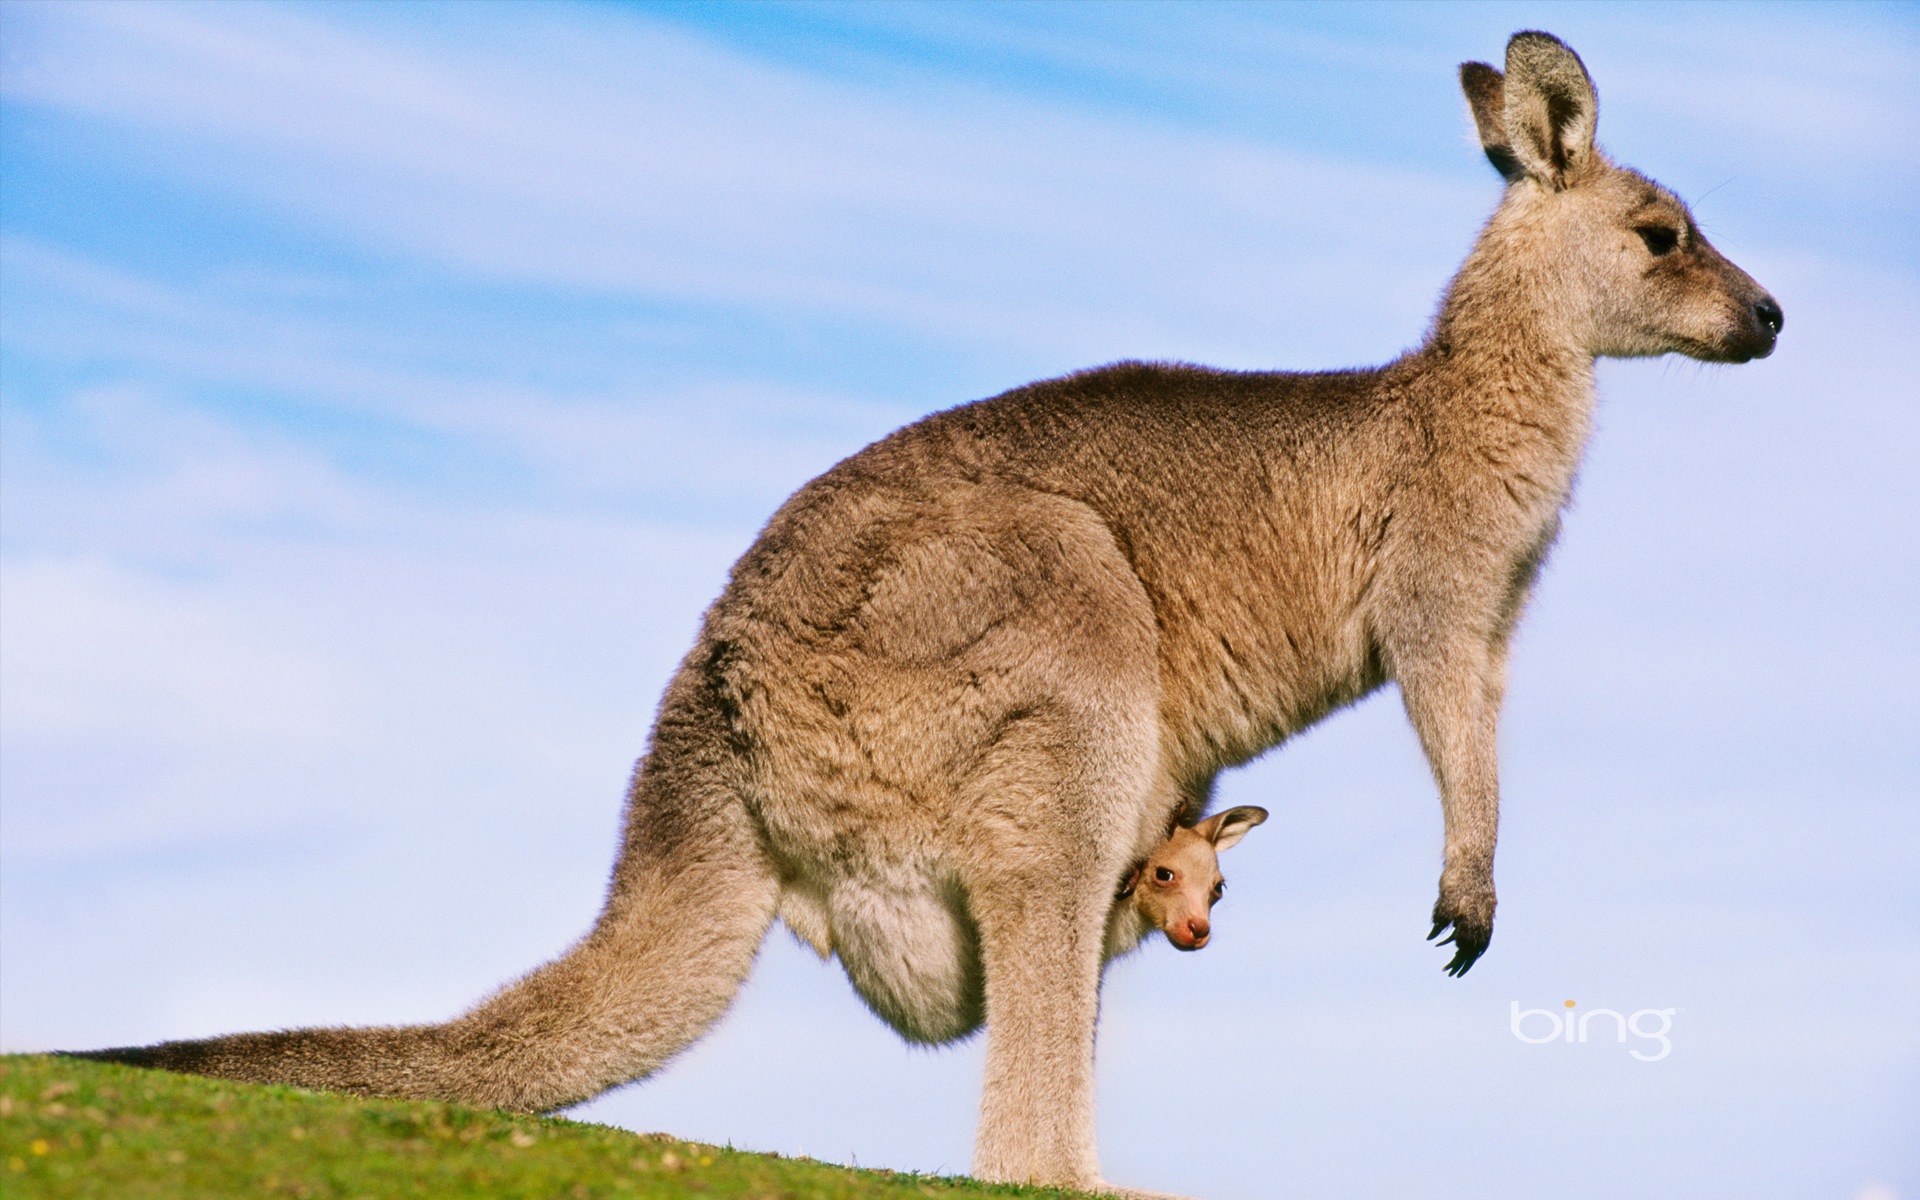 Bing Australie thème fonds d'écran HD, animaux, nature, bâtiments #1 - 1920x1200